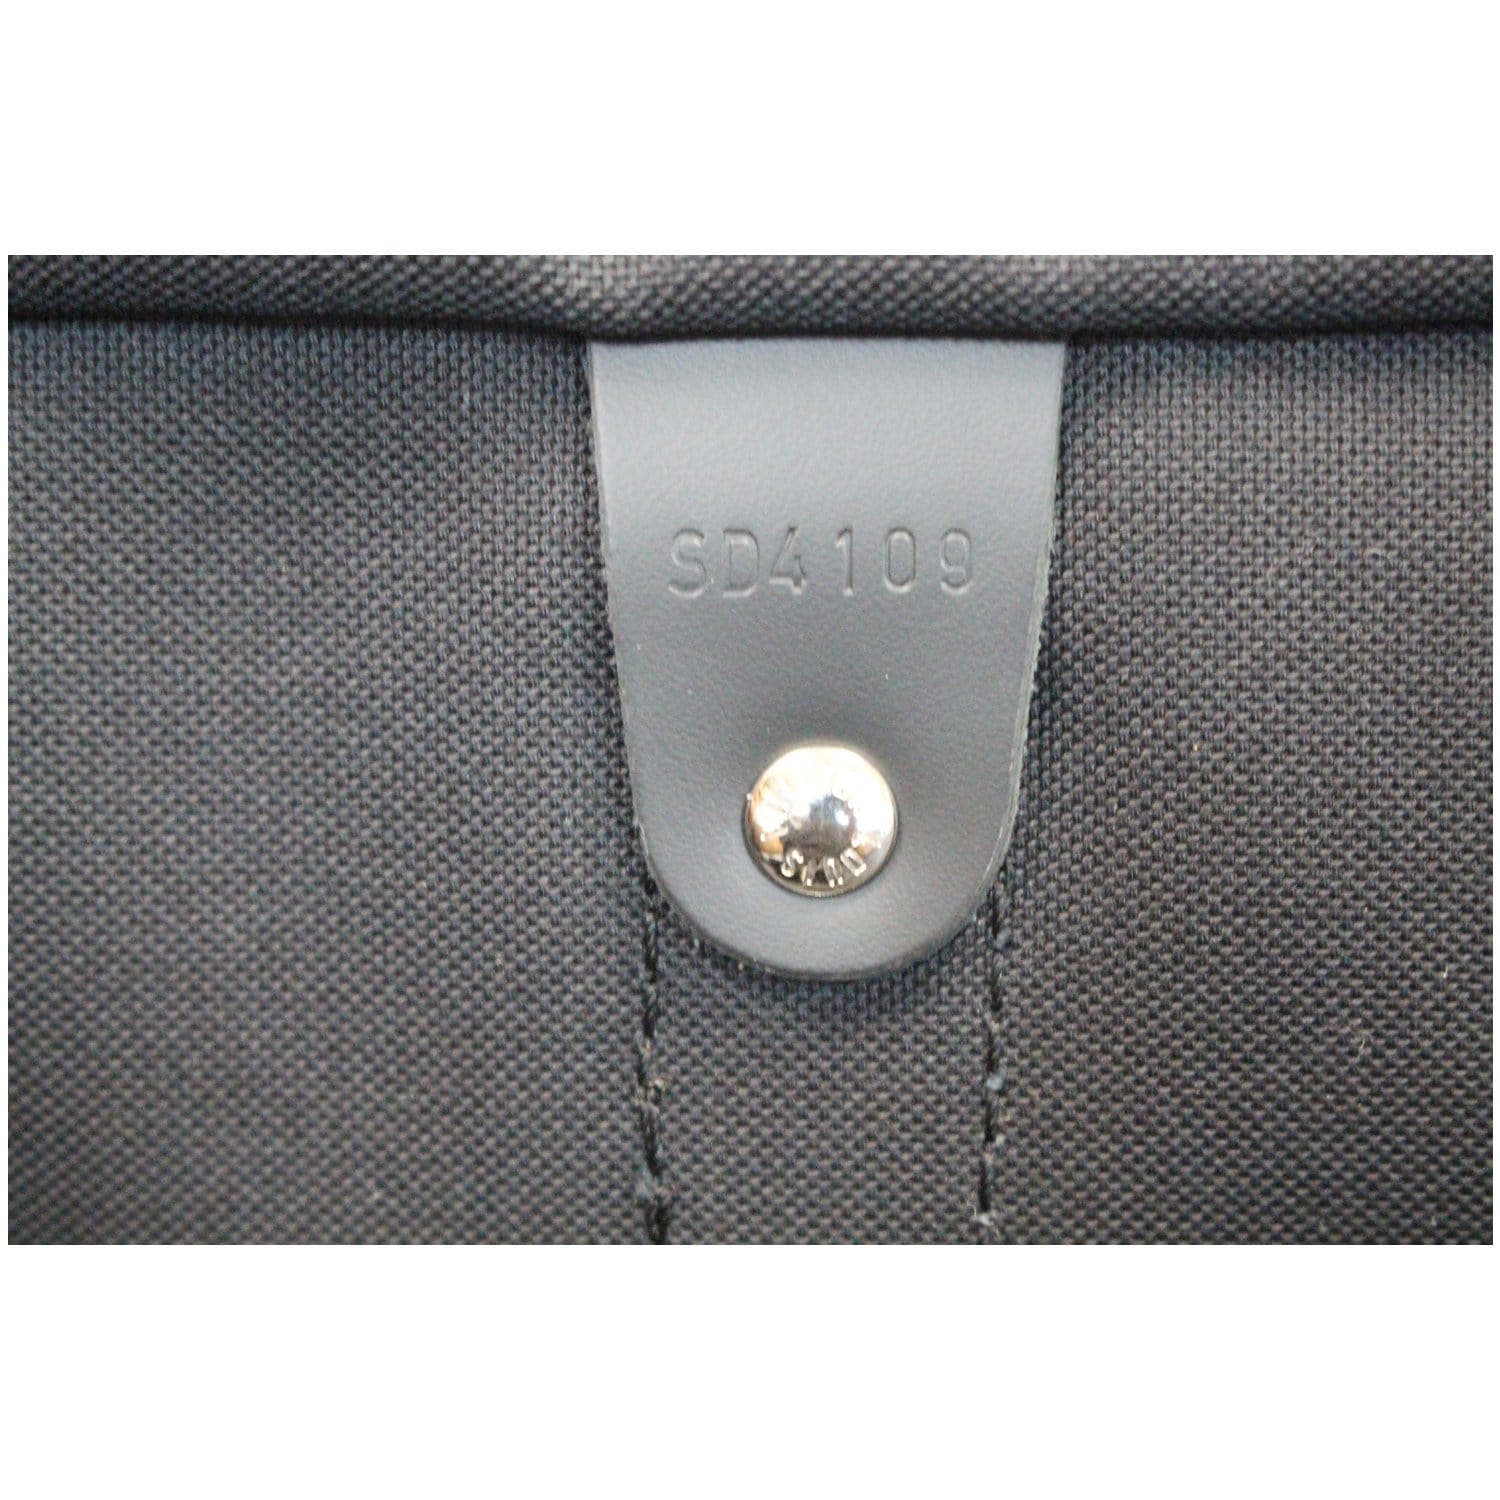 Louis Vuitton - Keepall Bandoulière 45 - Graphite - Damier Canvas - Men - Travel Bag - Luxury